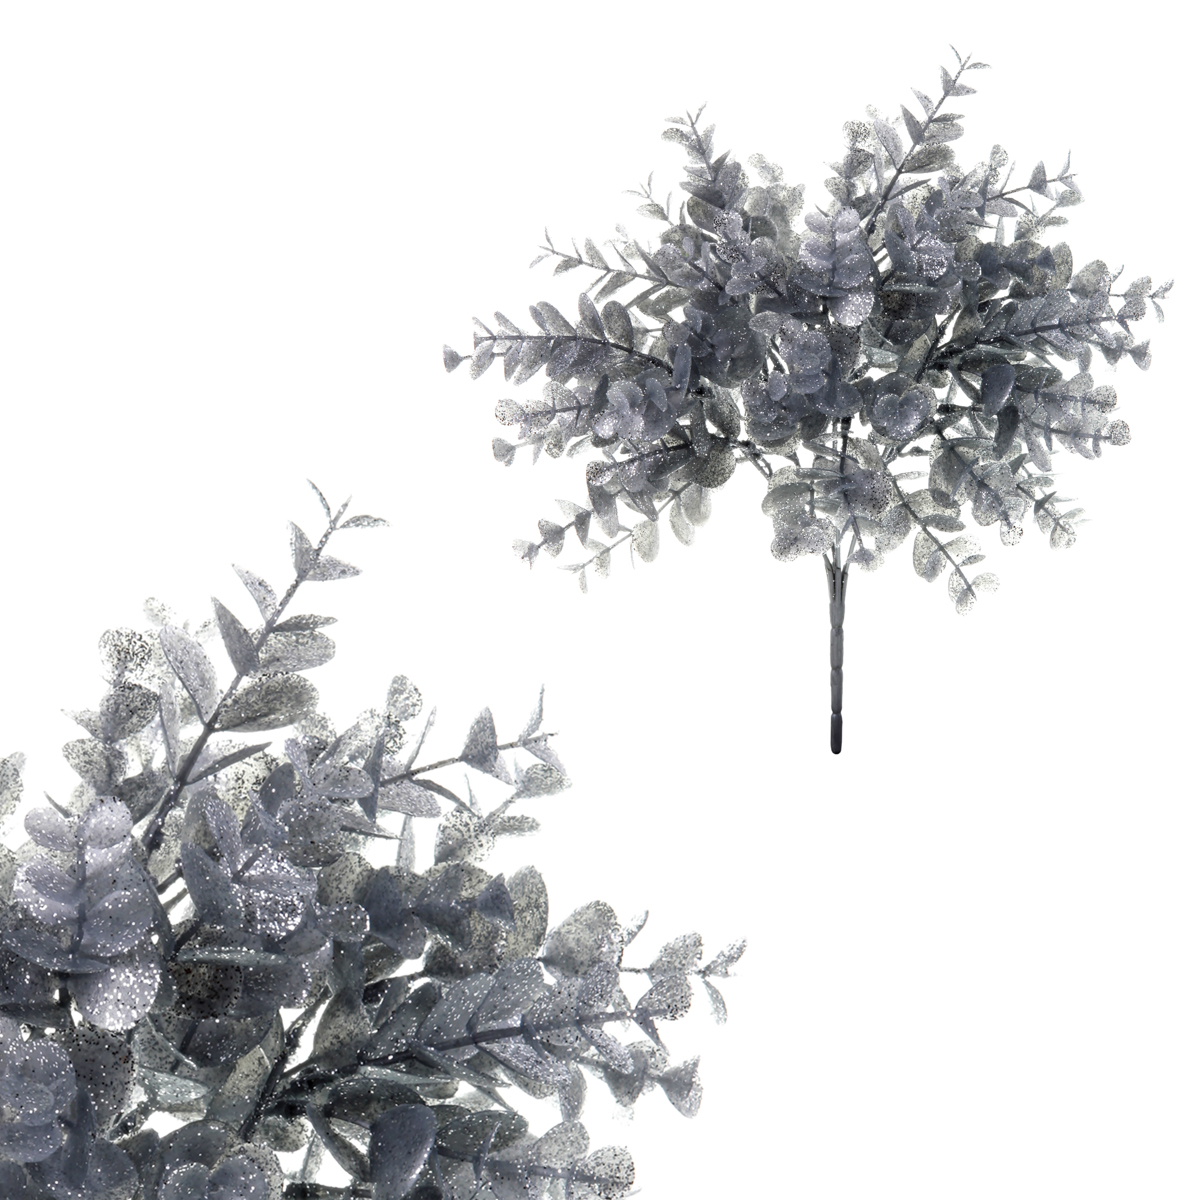 Eukalyptus, květina umělá plastová, barva stříbrná ojíněná